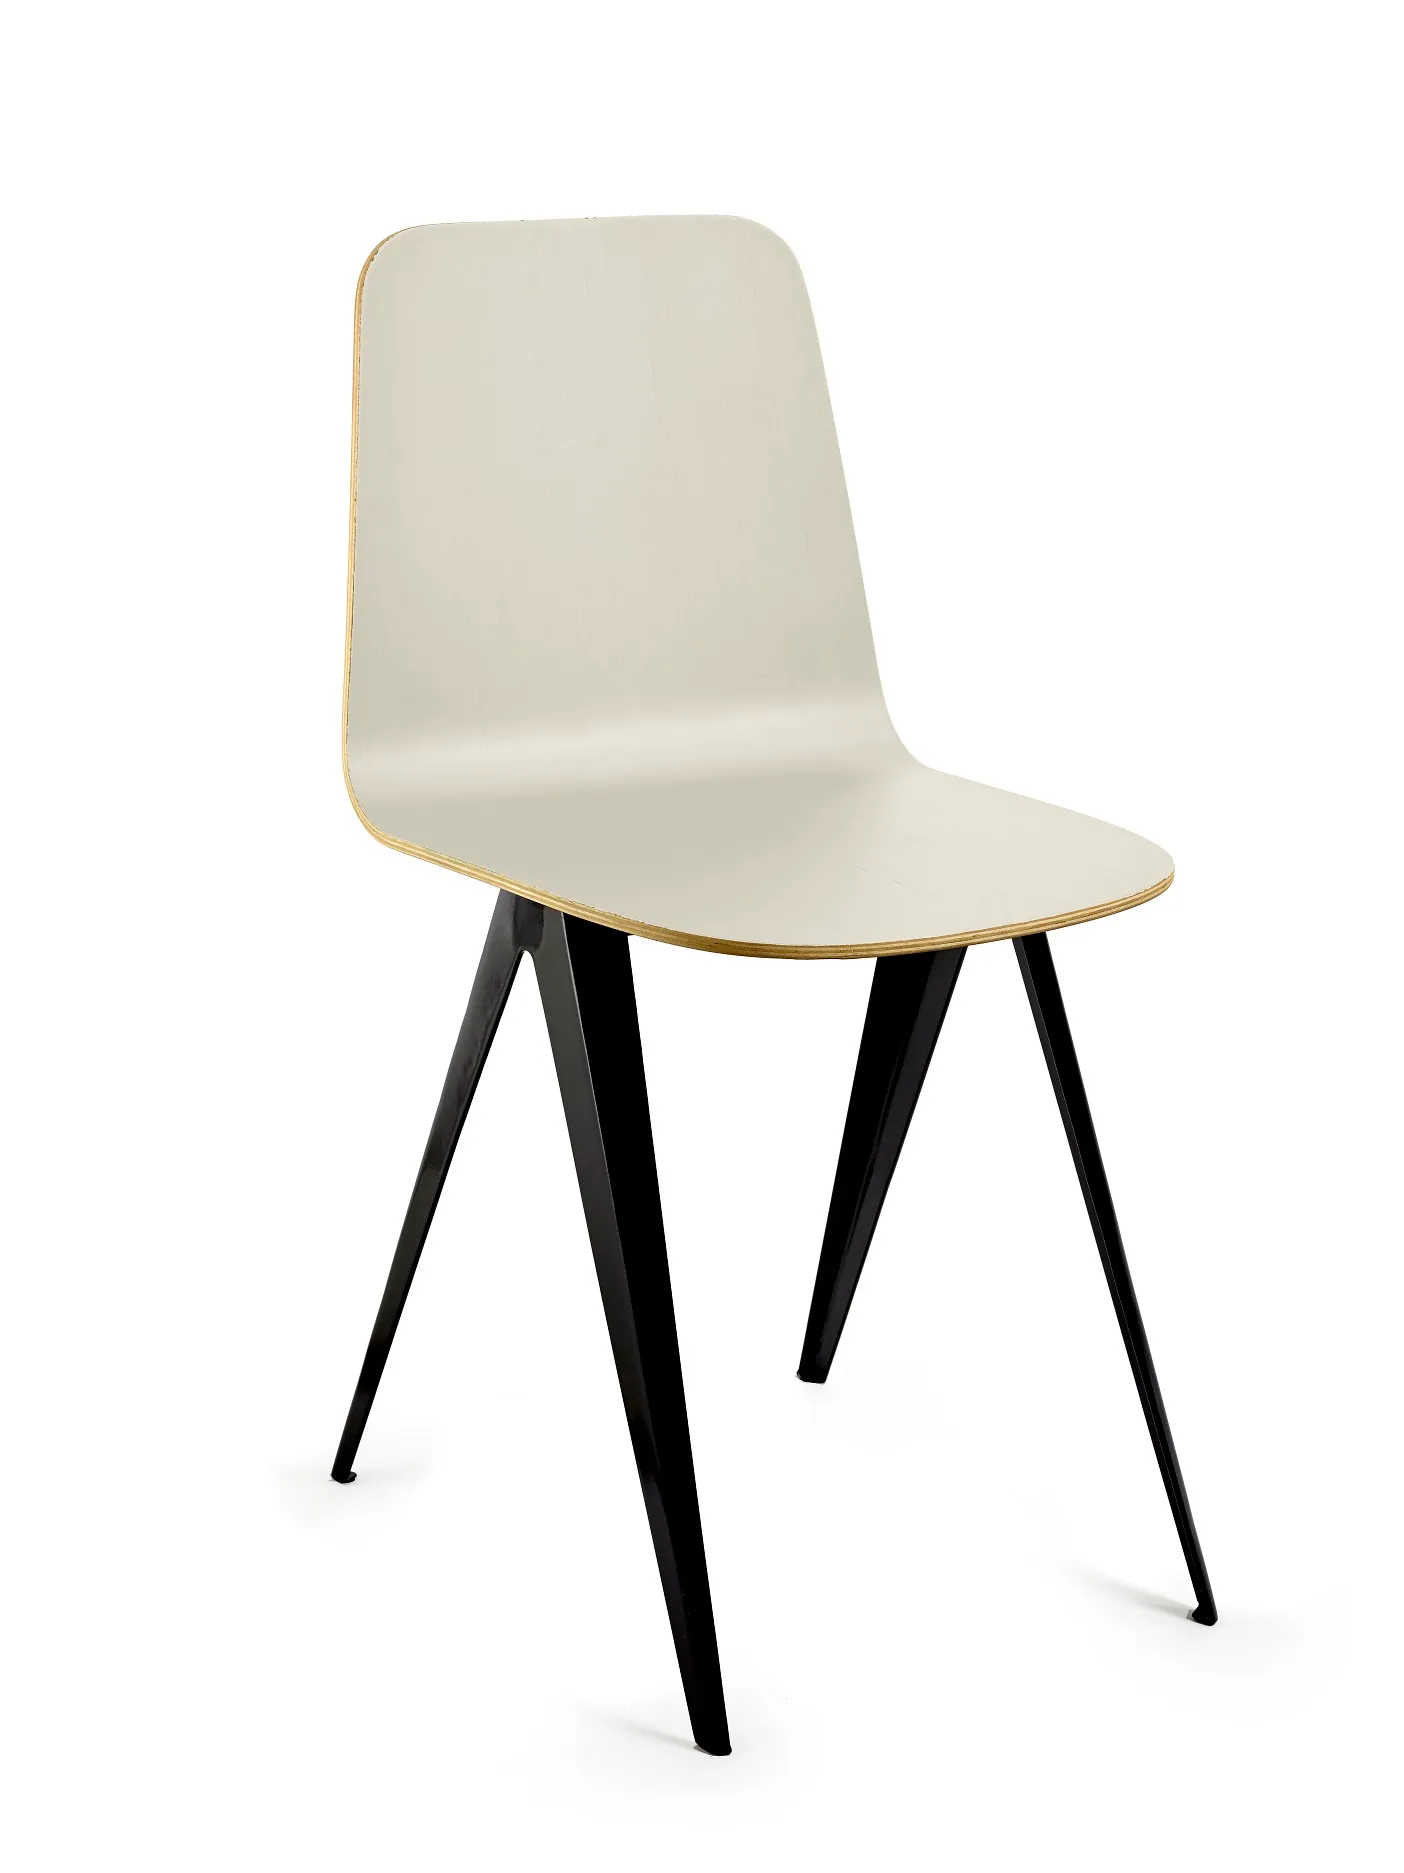 Chair Serax Black Cream White Sanba